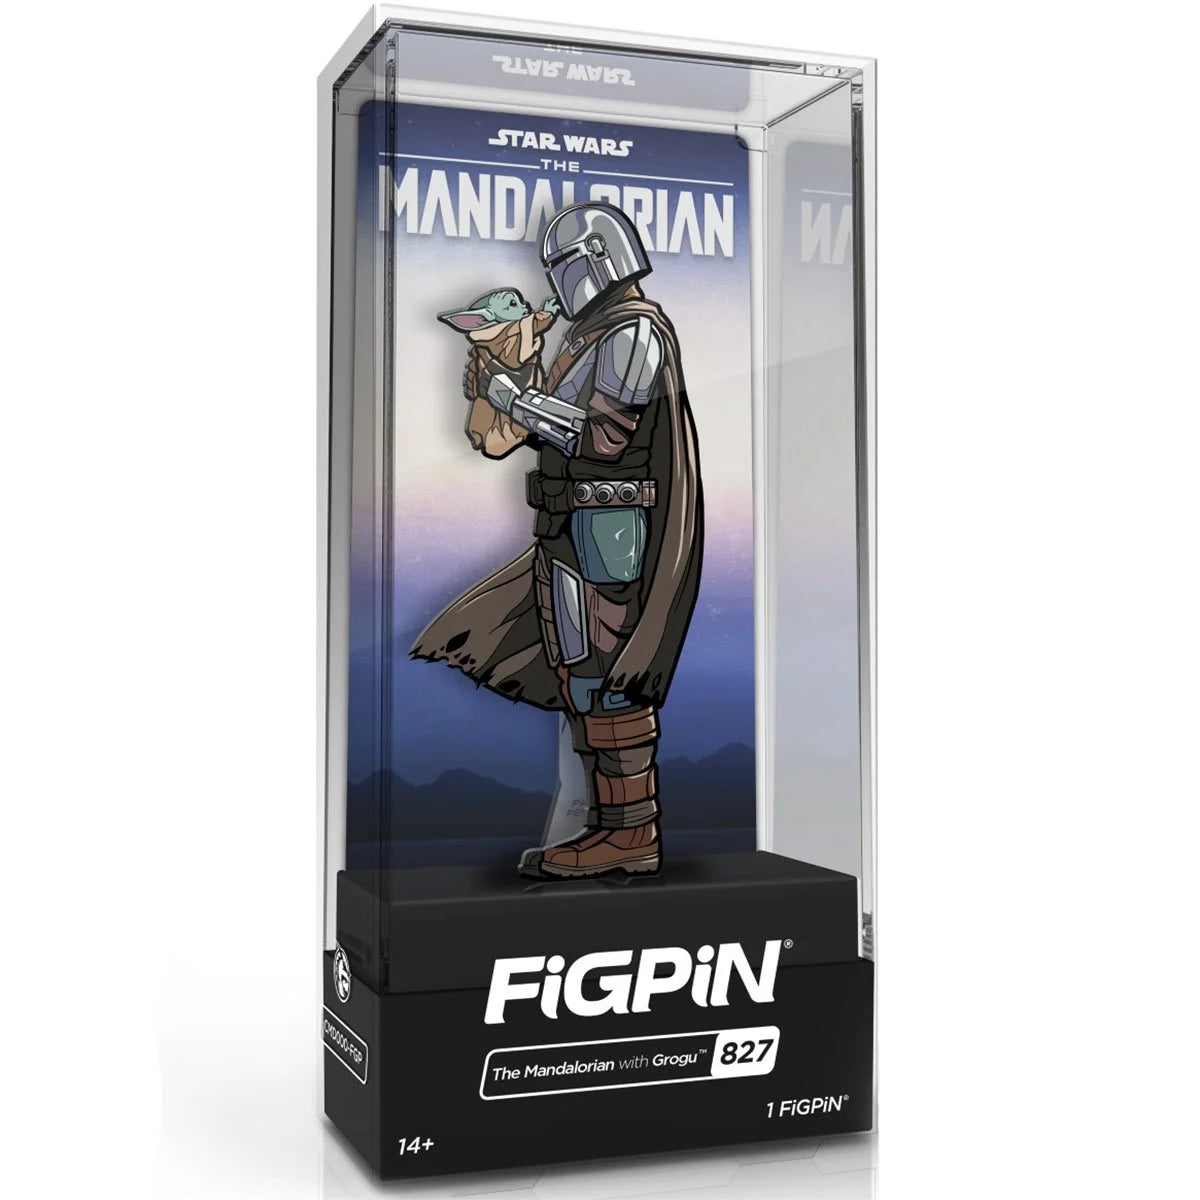 Star Wars: The Mandalorian with Grogu FiGPiN Hasbro